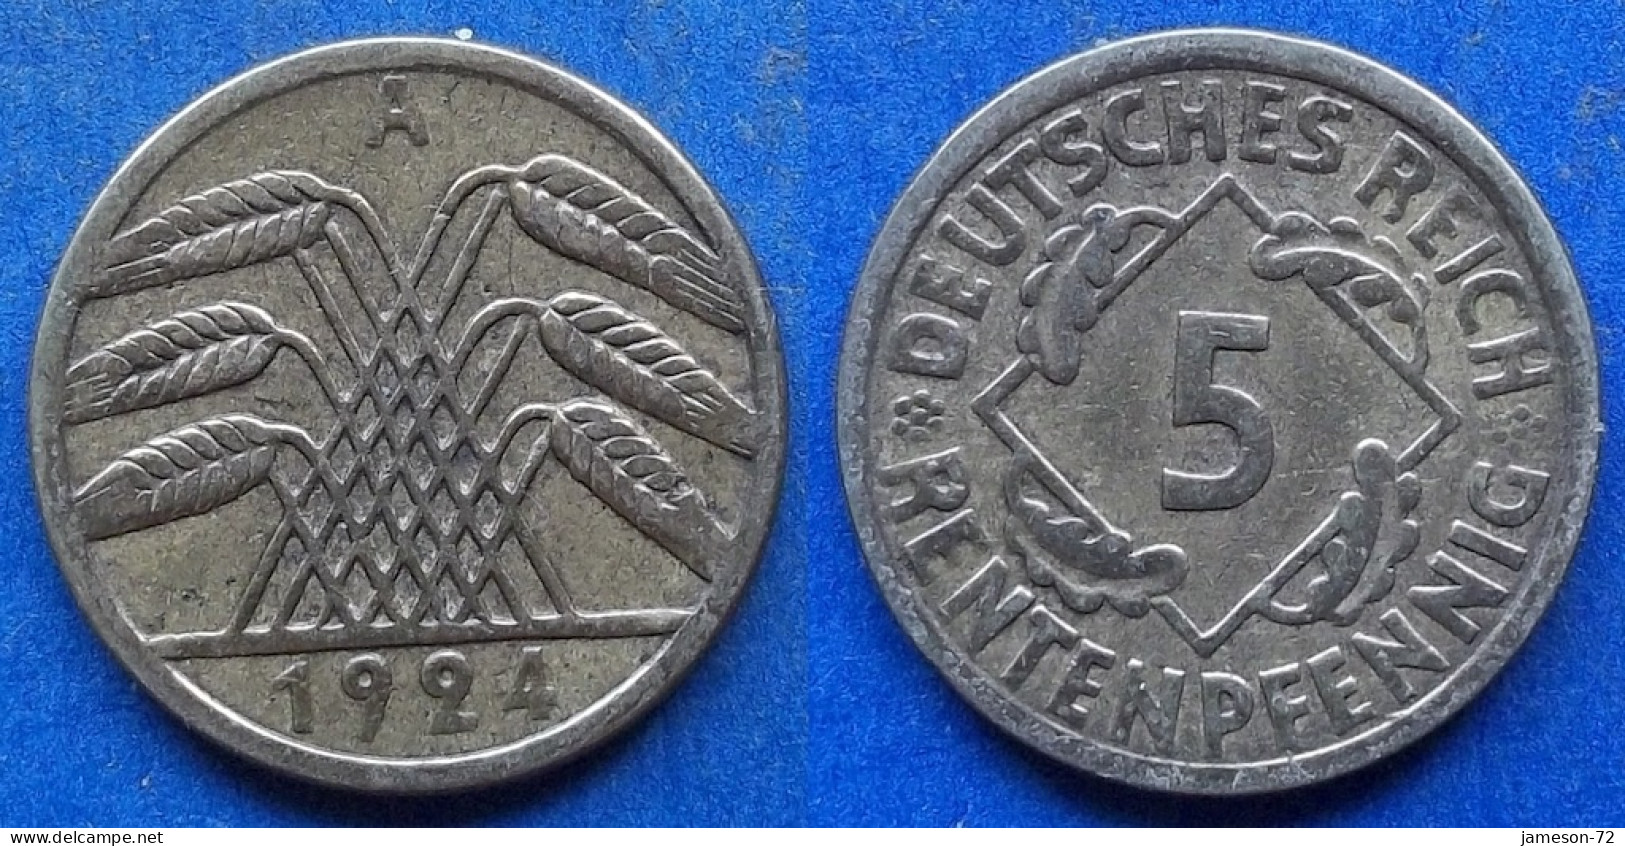 GERMANY - 5 Rentenpfennig 1924 A KM# 32 Weimar Republic Rentenmark Coinage (1923-1929) - Edelweiss Coins - 5 Rentenpfennig & 5 Reichspfennig